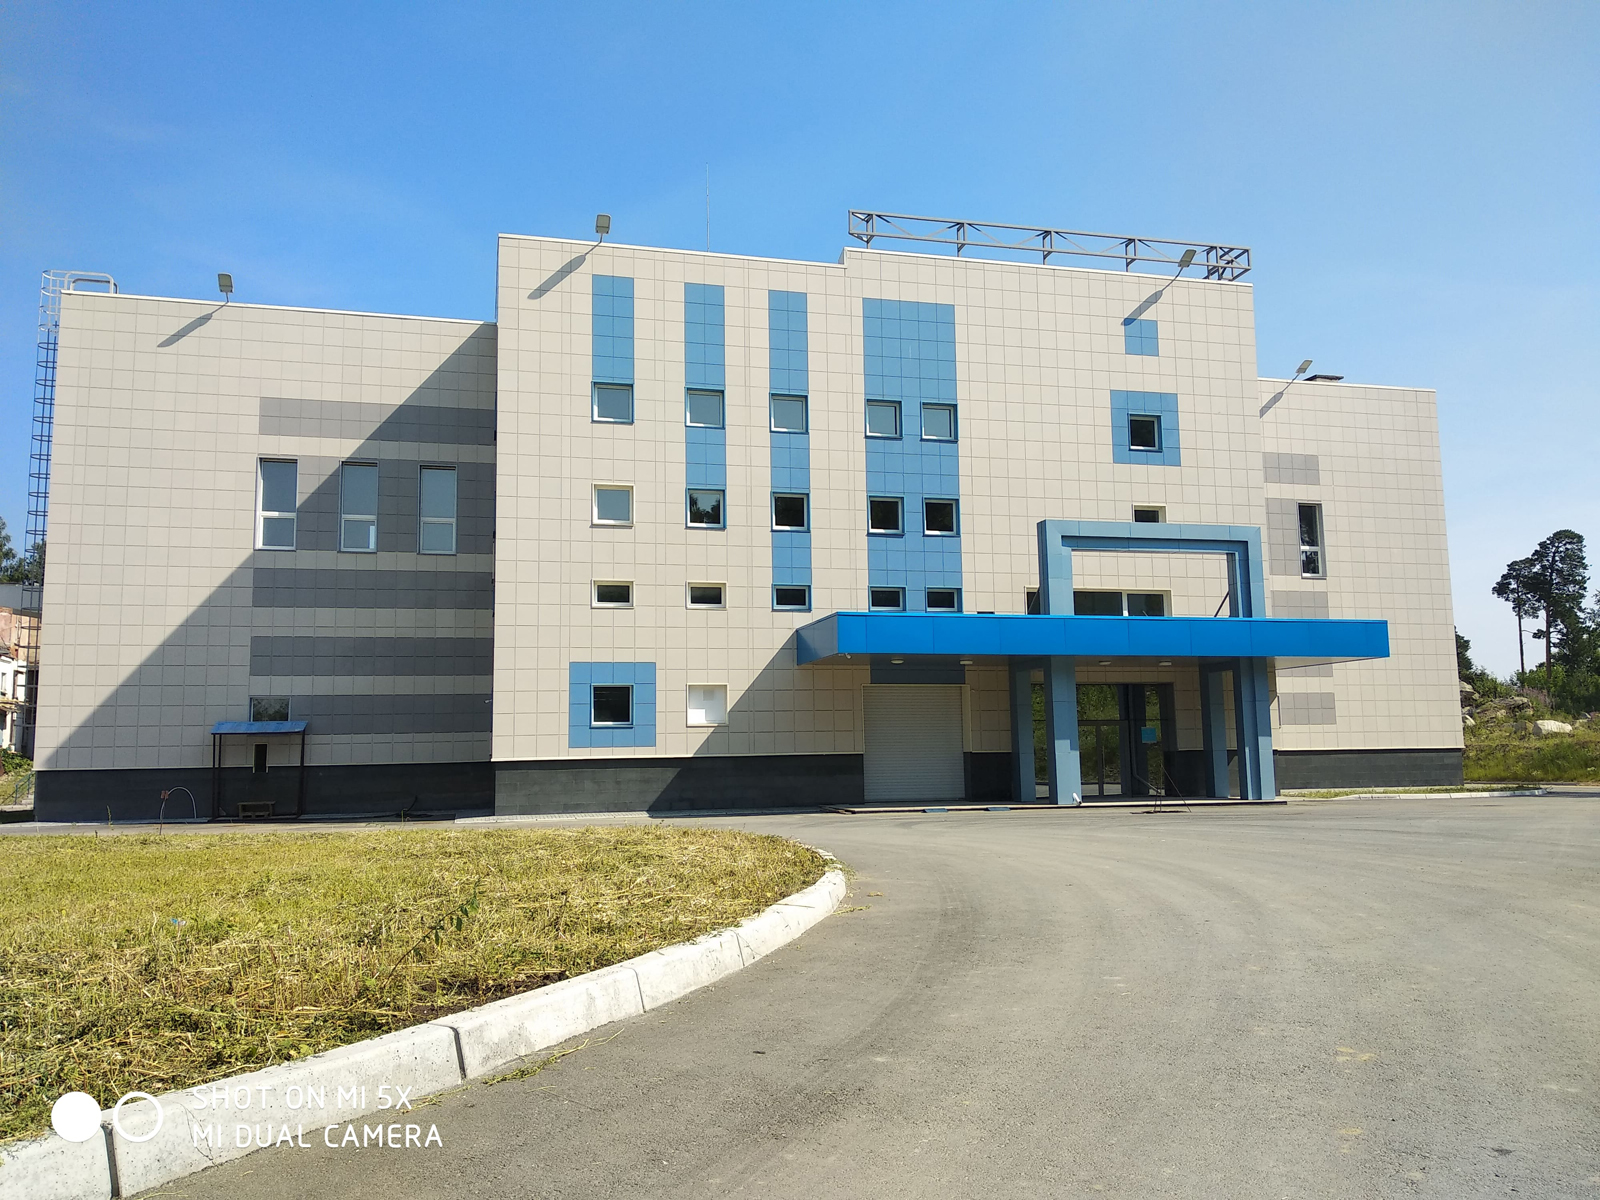 Реконструкция и расширение Головных сооружений водопровода г. Екатеринбурга производительностью 300,0 тыс.м3/сут.